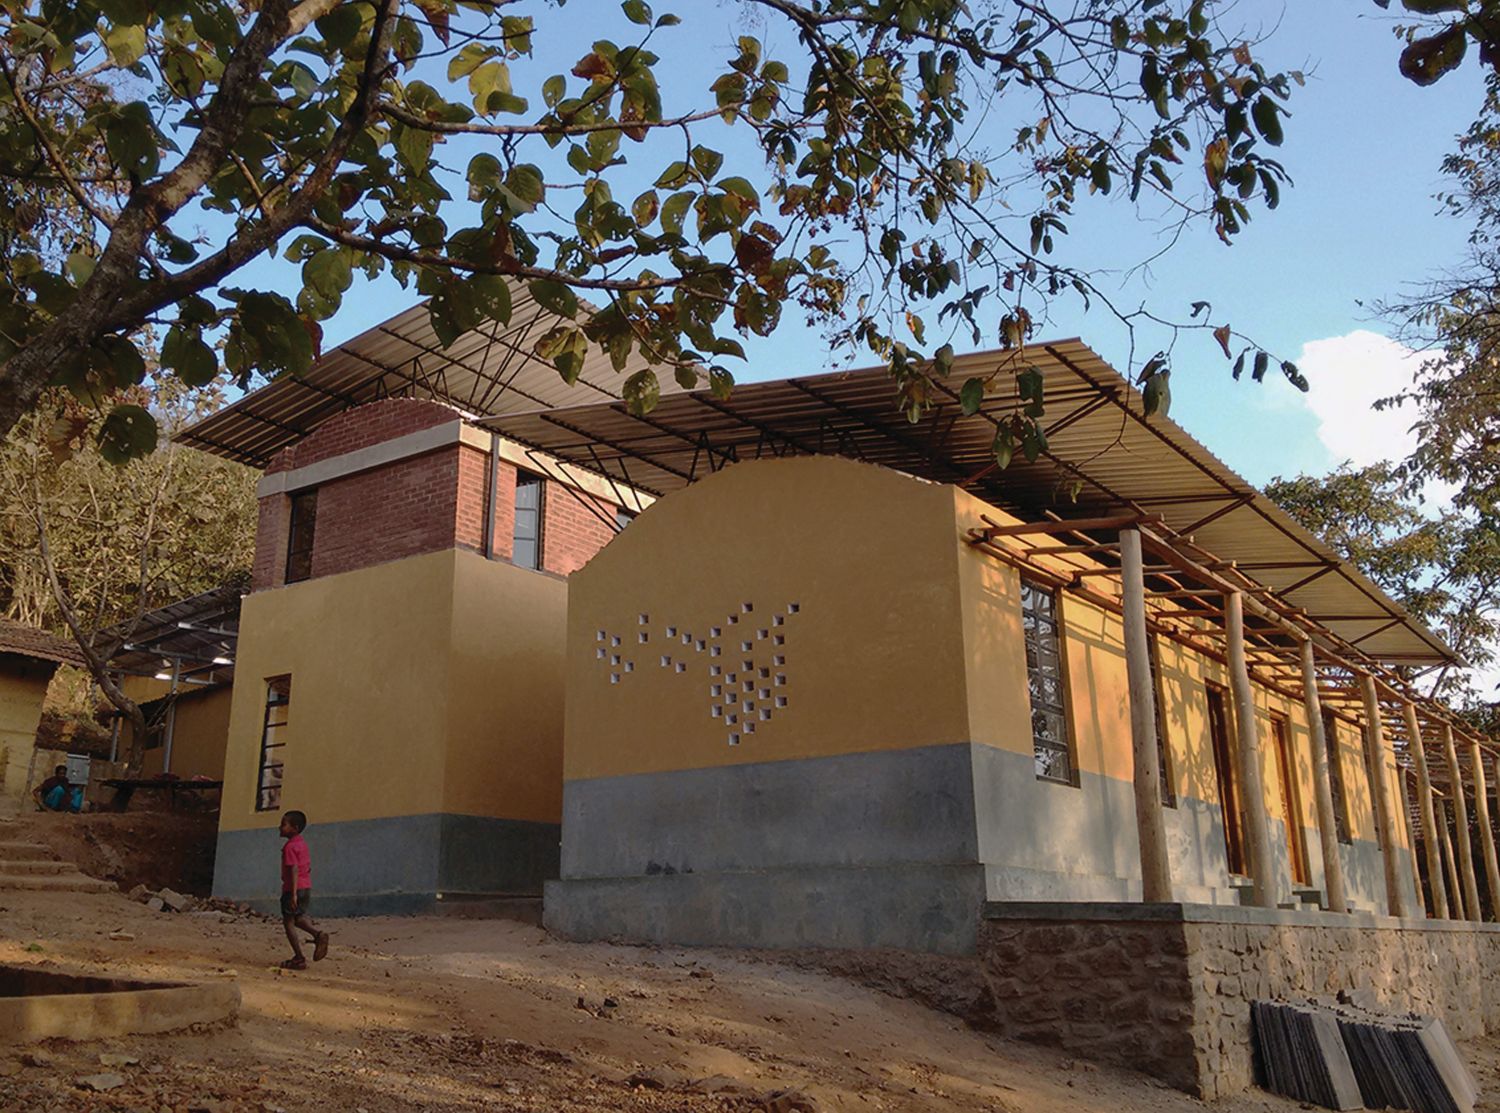  Kalkeri Learning Centre in Kalkeri, Dharwad by Kumar La Noce